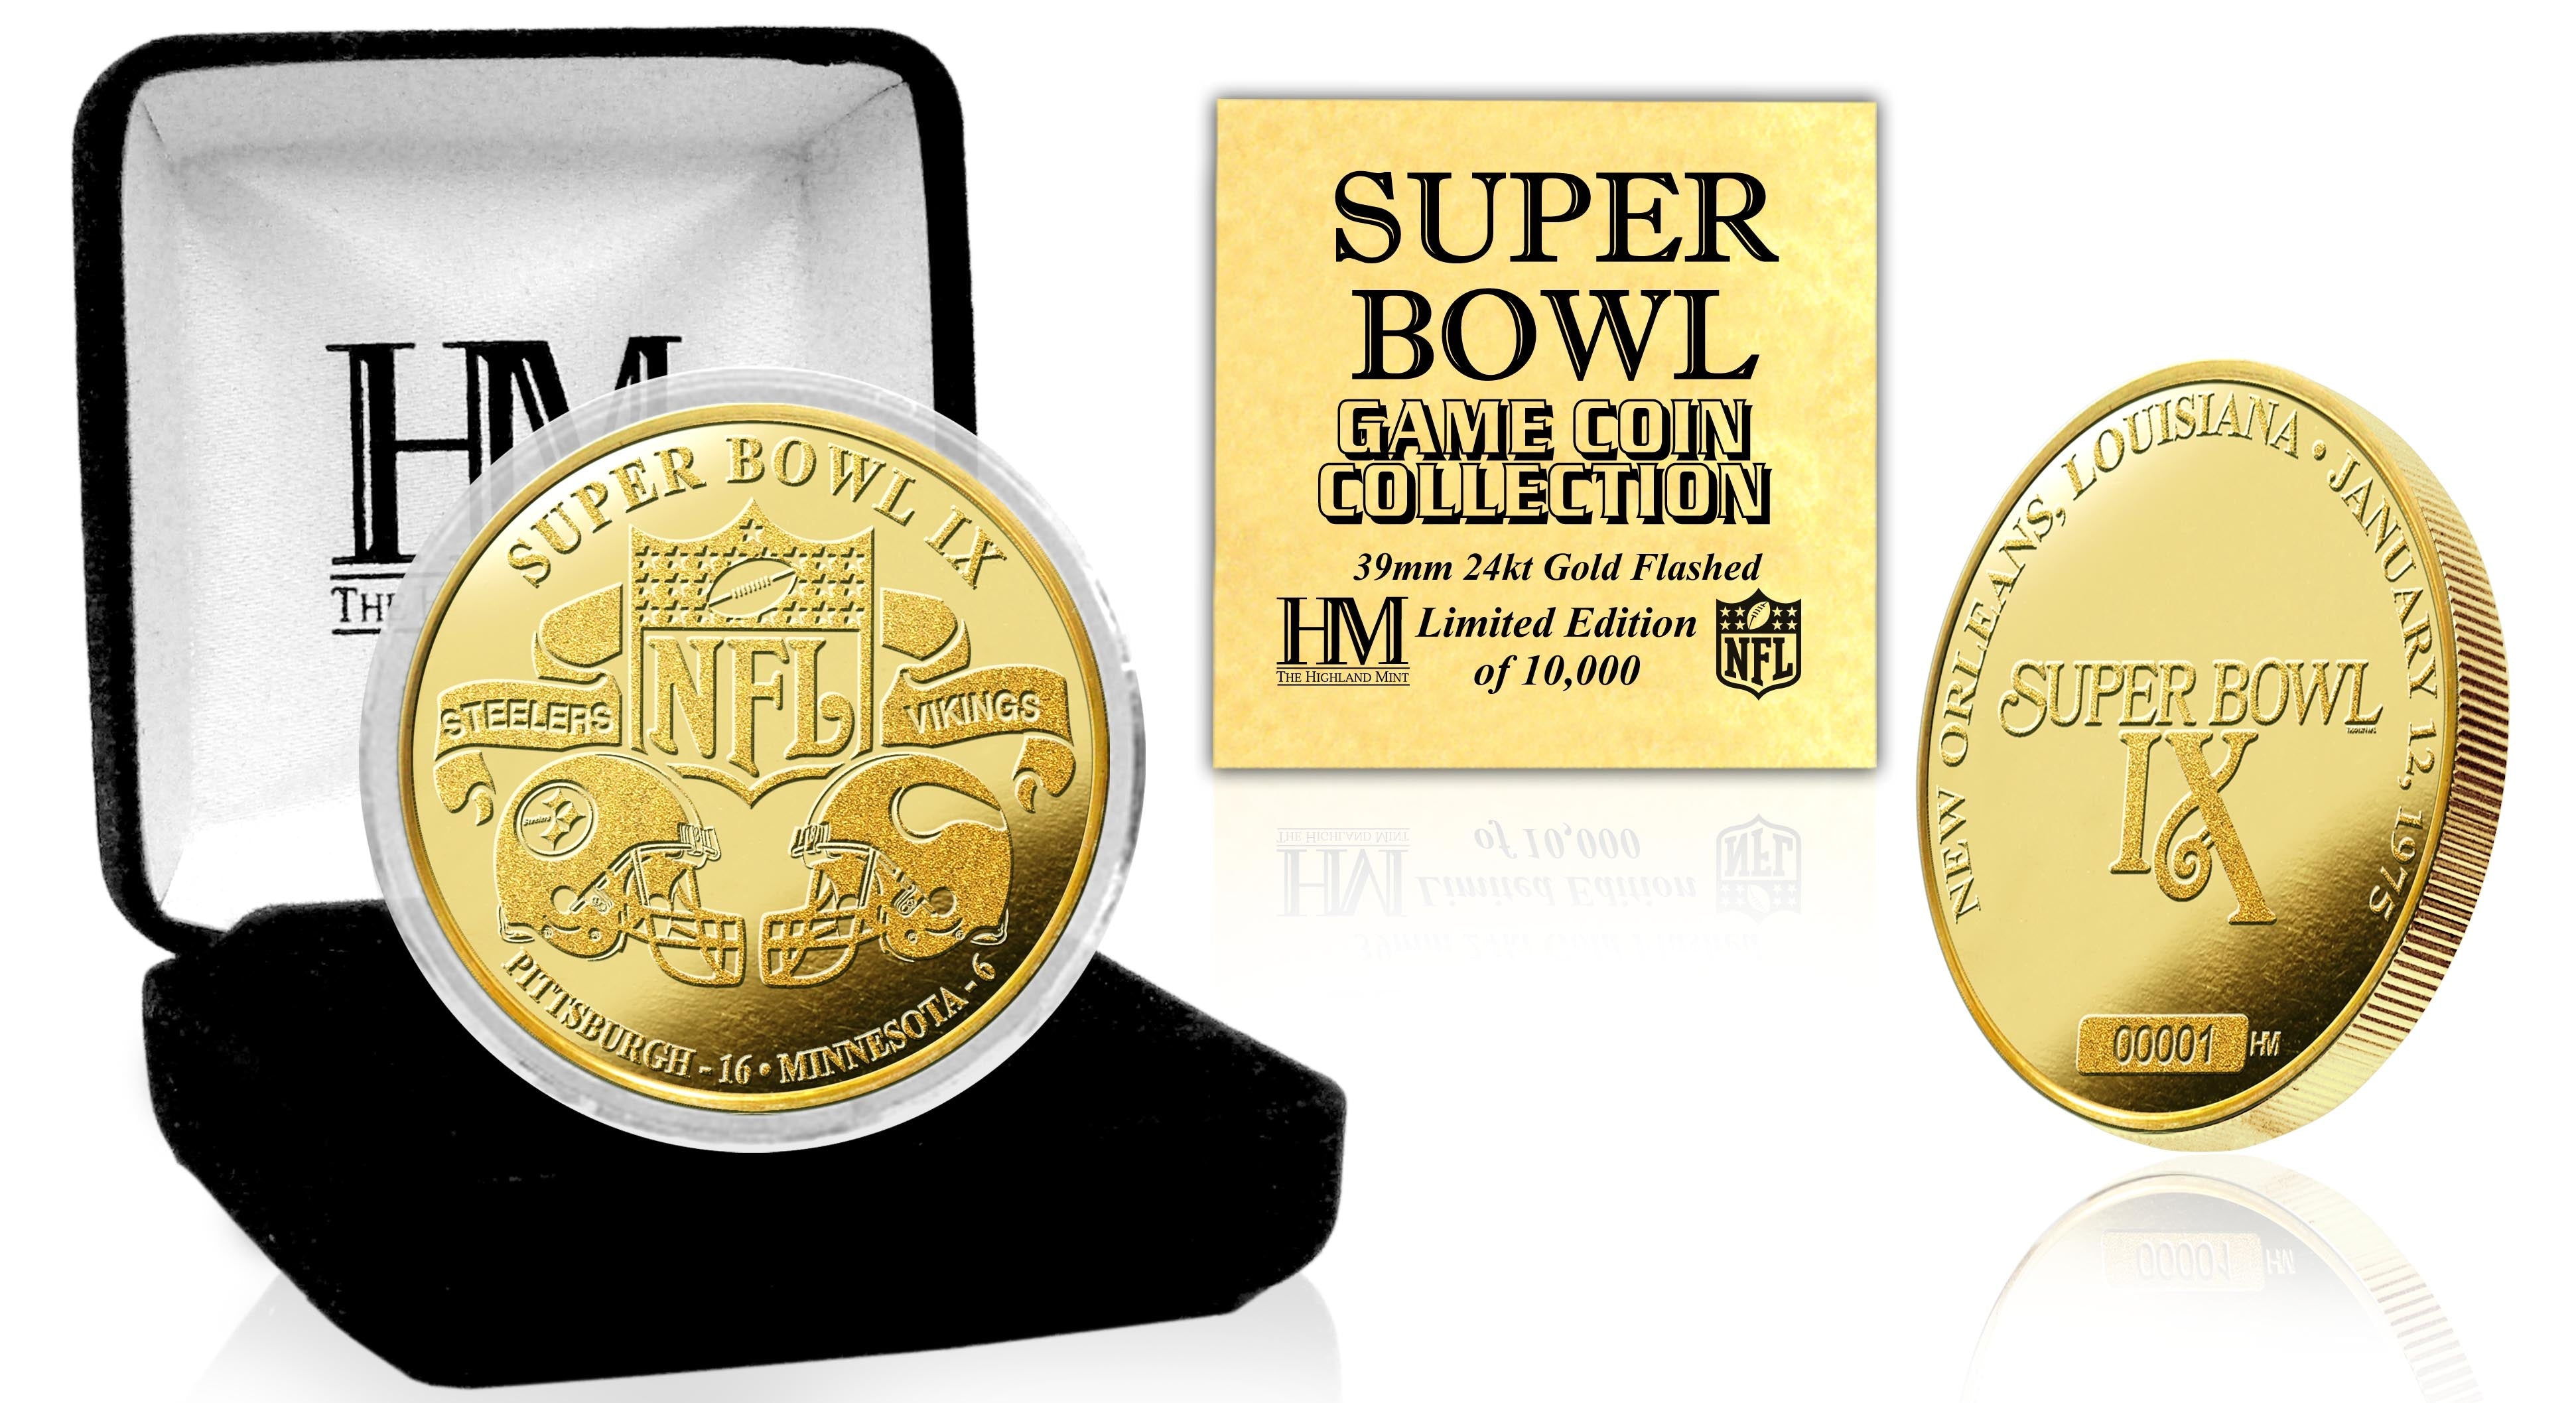 Super Bowl IX 24kt Gold Flip Coin